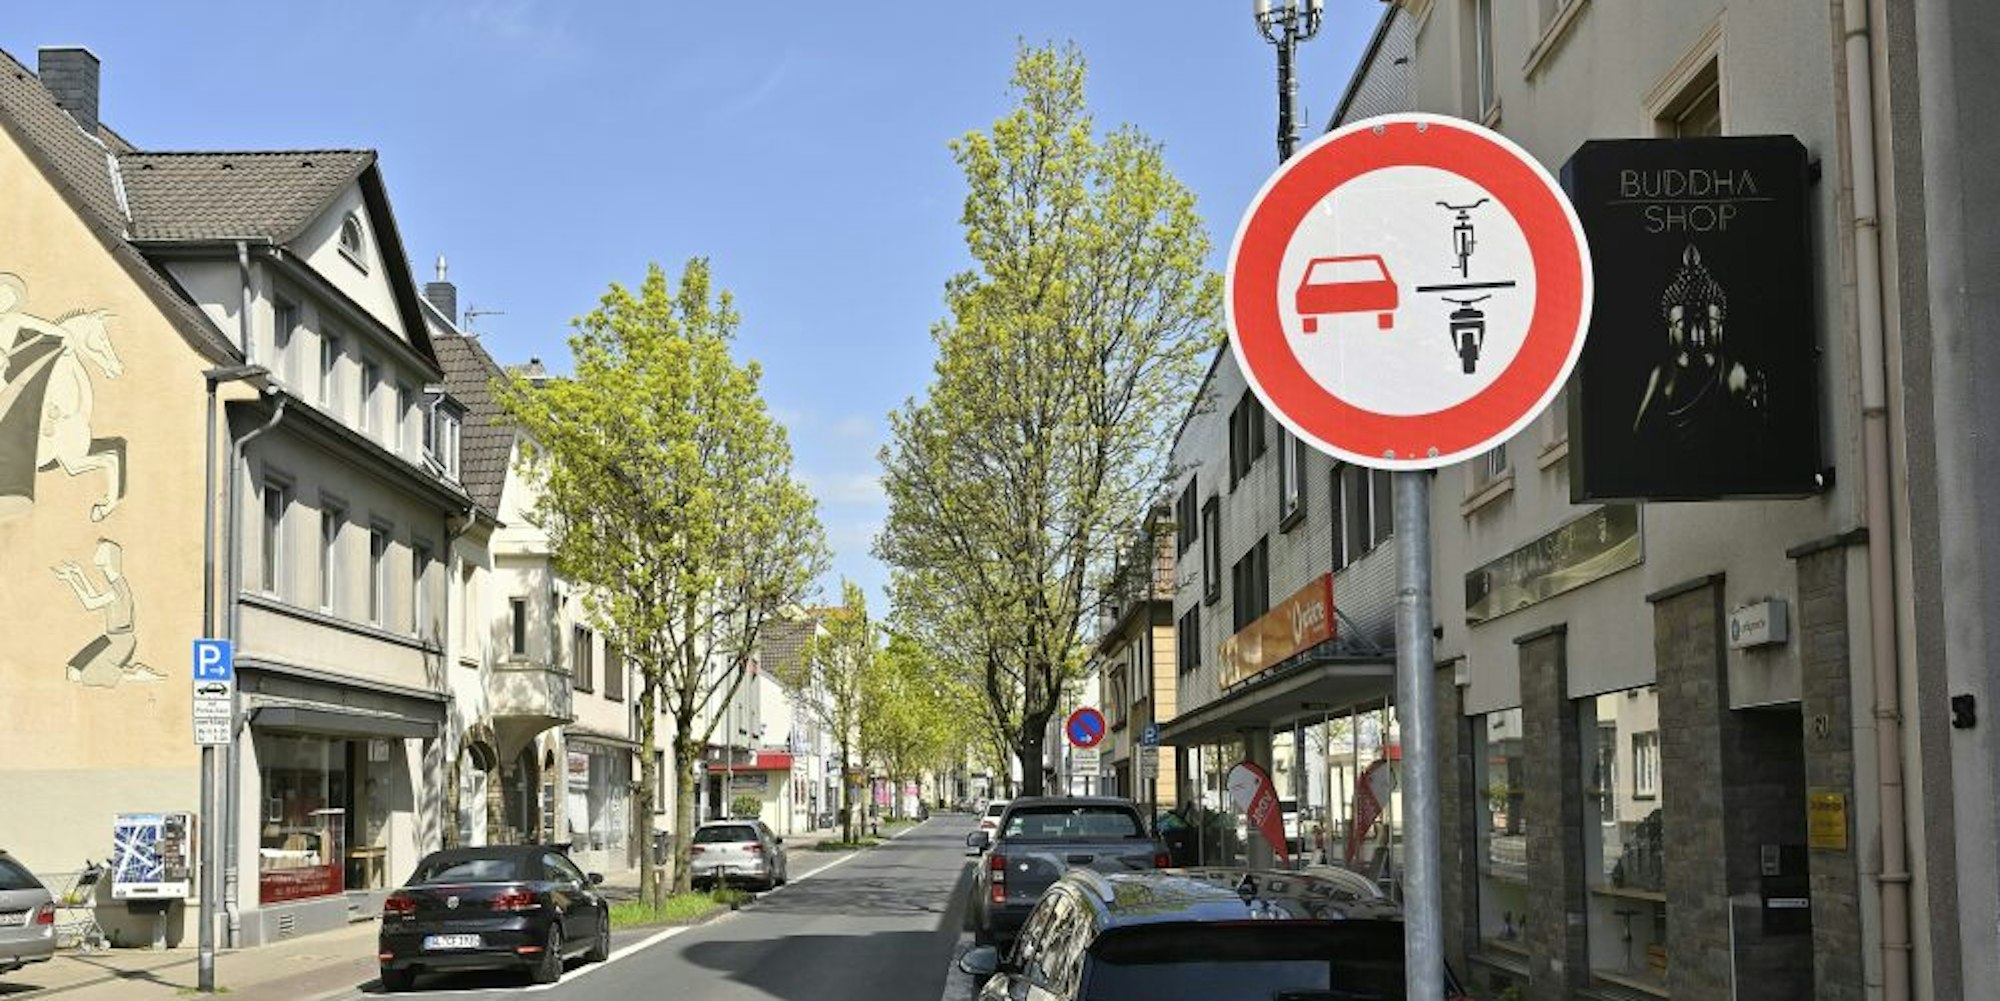 Radfahrer und motorisierte Zweiradfahrer dürfen nicht überholt werden – so zeigt es das neue Zeichen an.